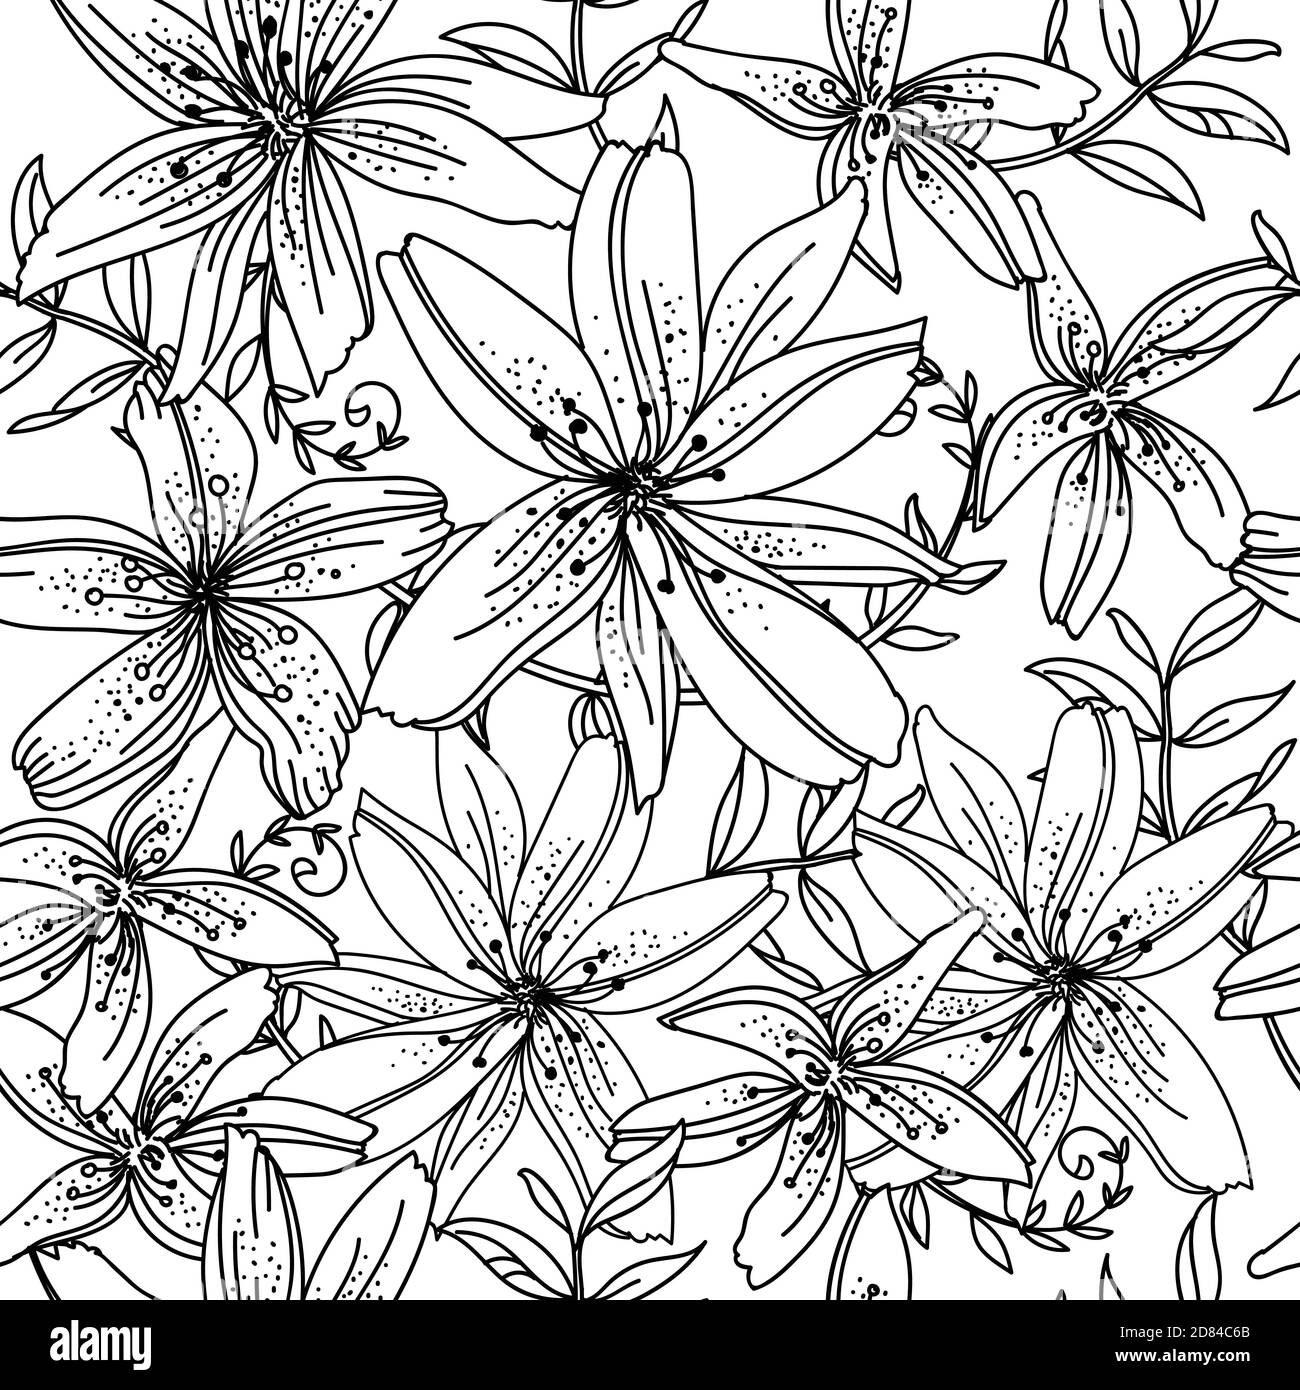 Nahtloses Muster mit Lilienblumen. Monochromer Hintergrund für die Erstellung von Textilien, Tapeten, Papier, Hochzeitseinladung, Design, Druck. Vektorgrafik Stock Vektor